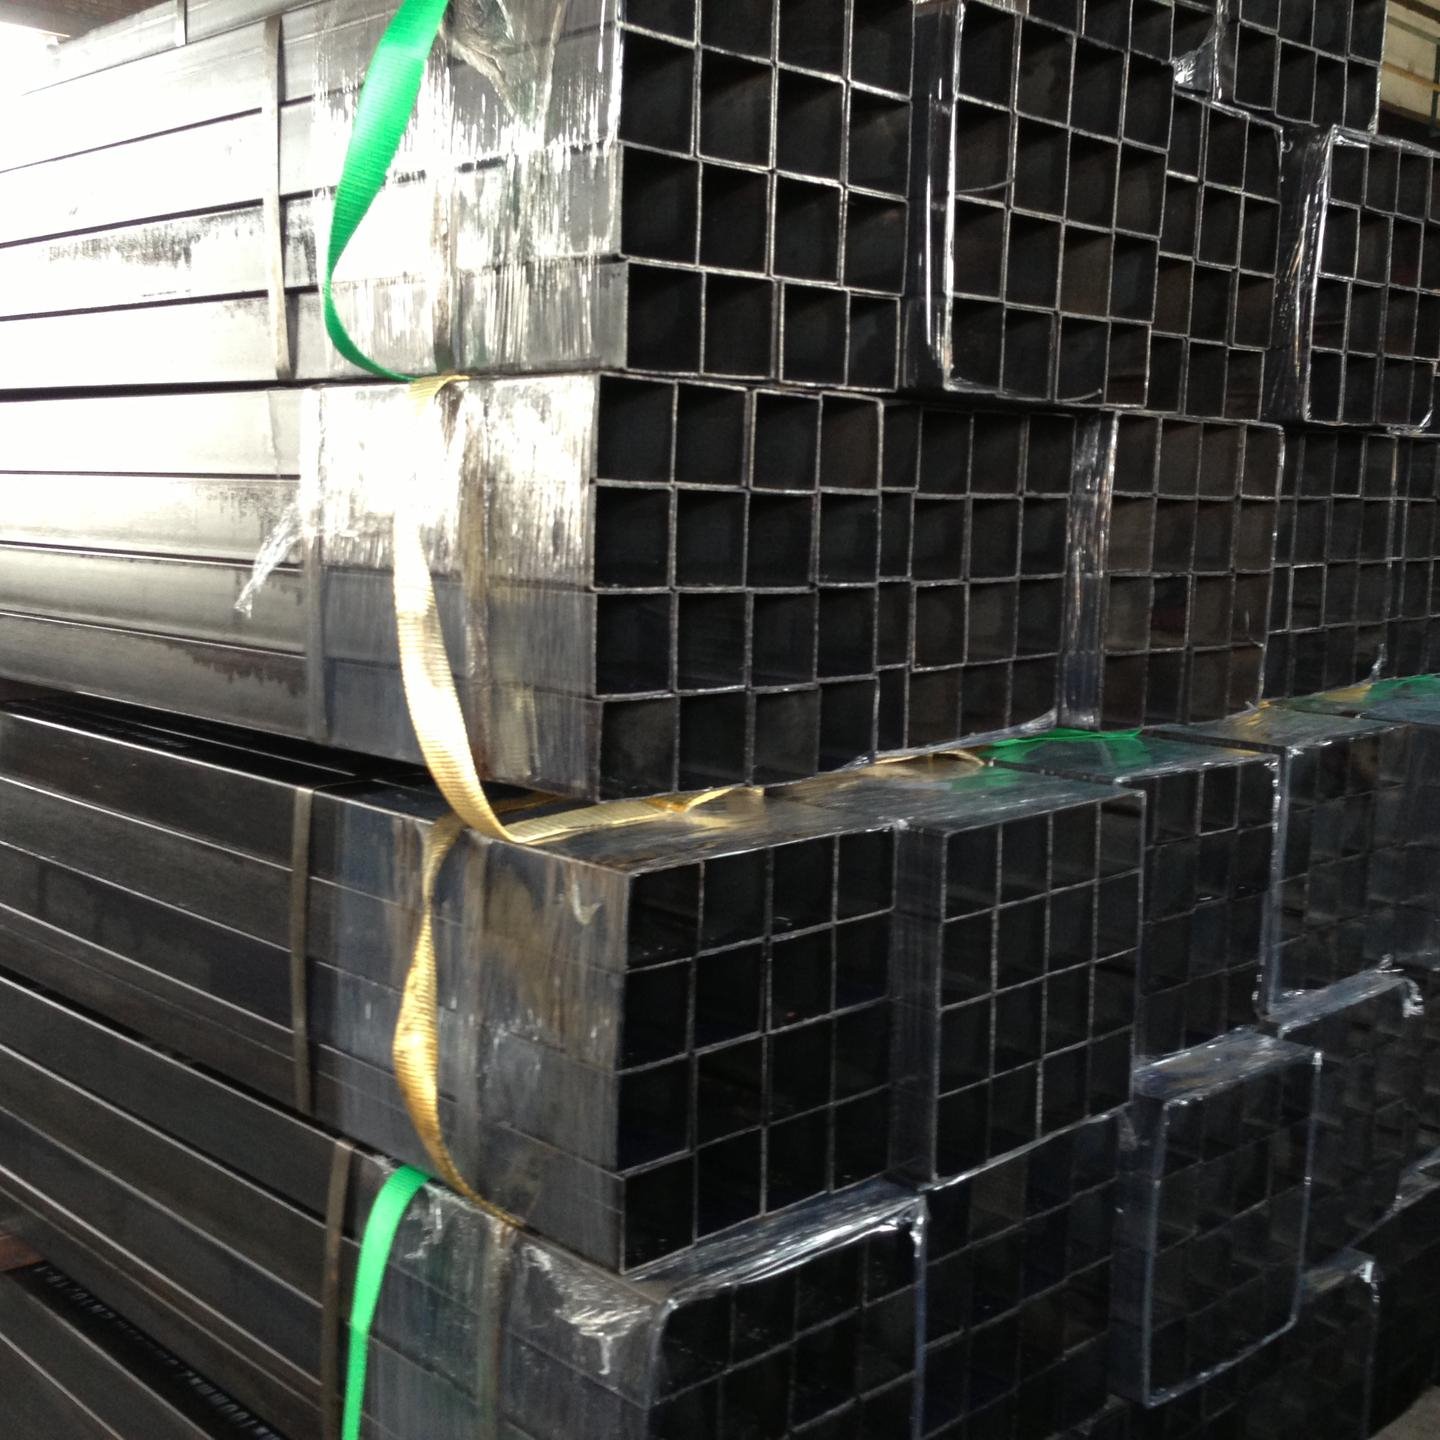 天津腾越钢铁有限公司主营销售 黑方管 焊接方管 涂油方管 8080 Q235材质  可根据产品标准及客户需求定做